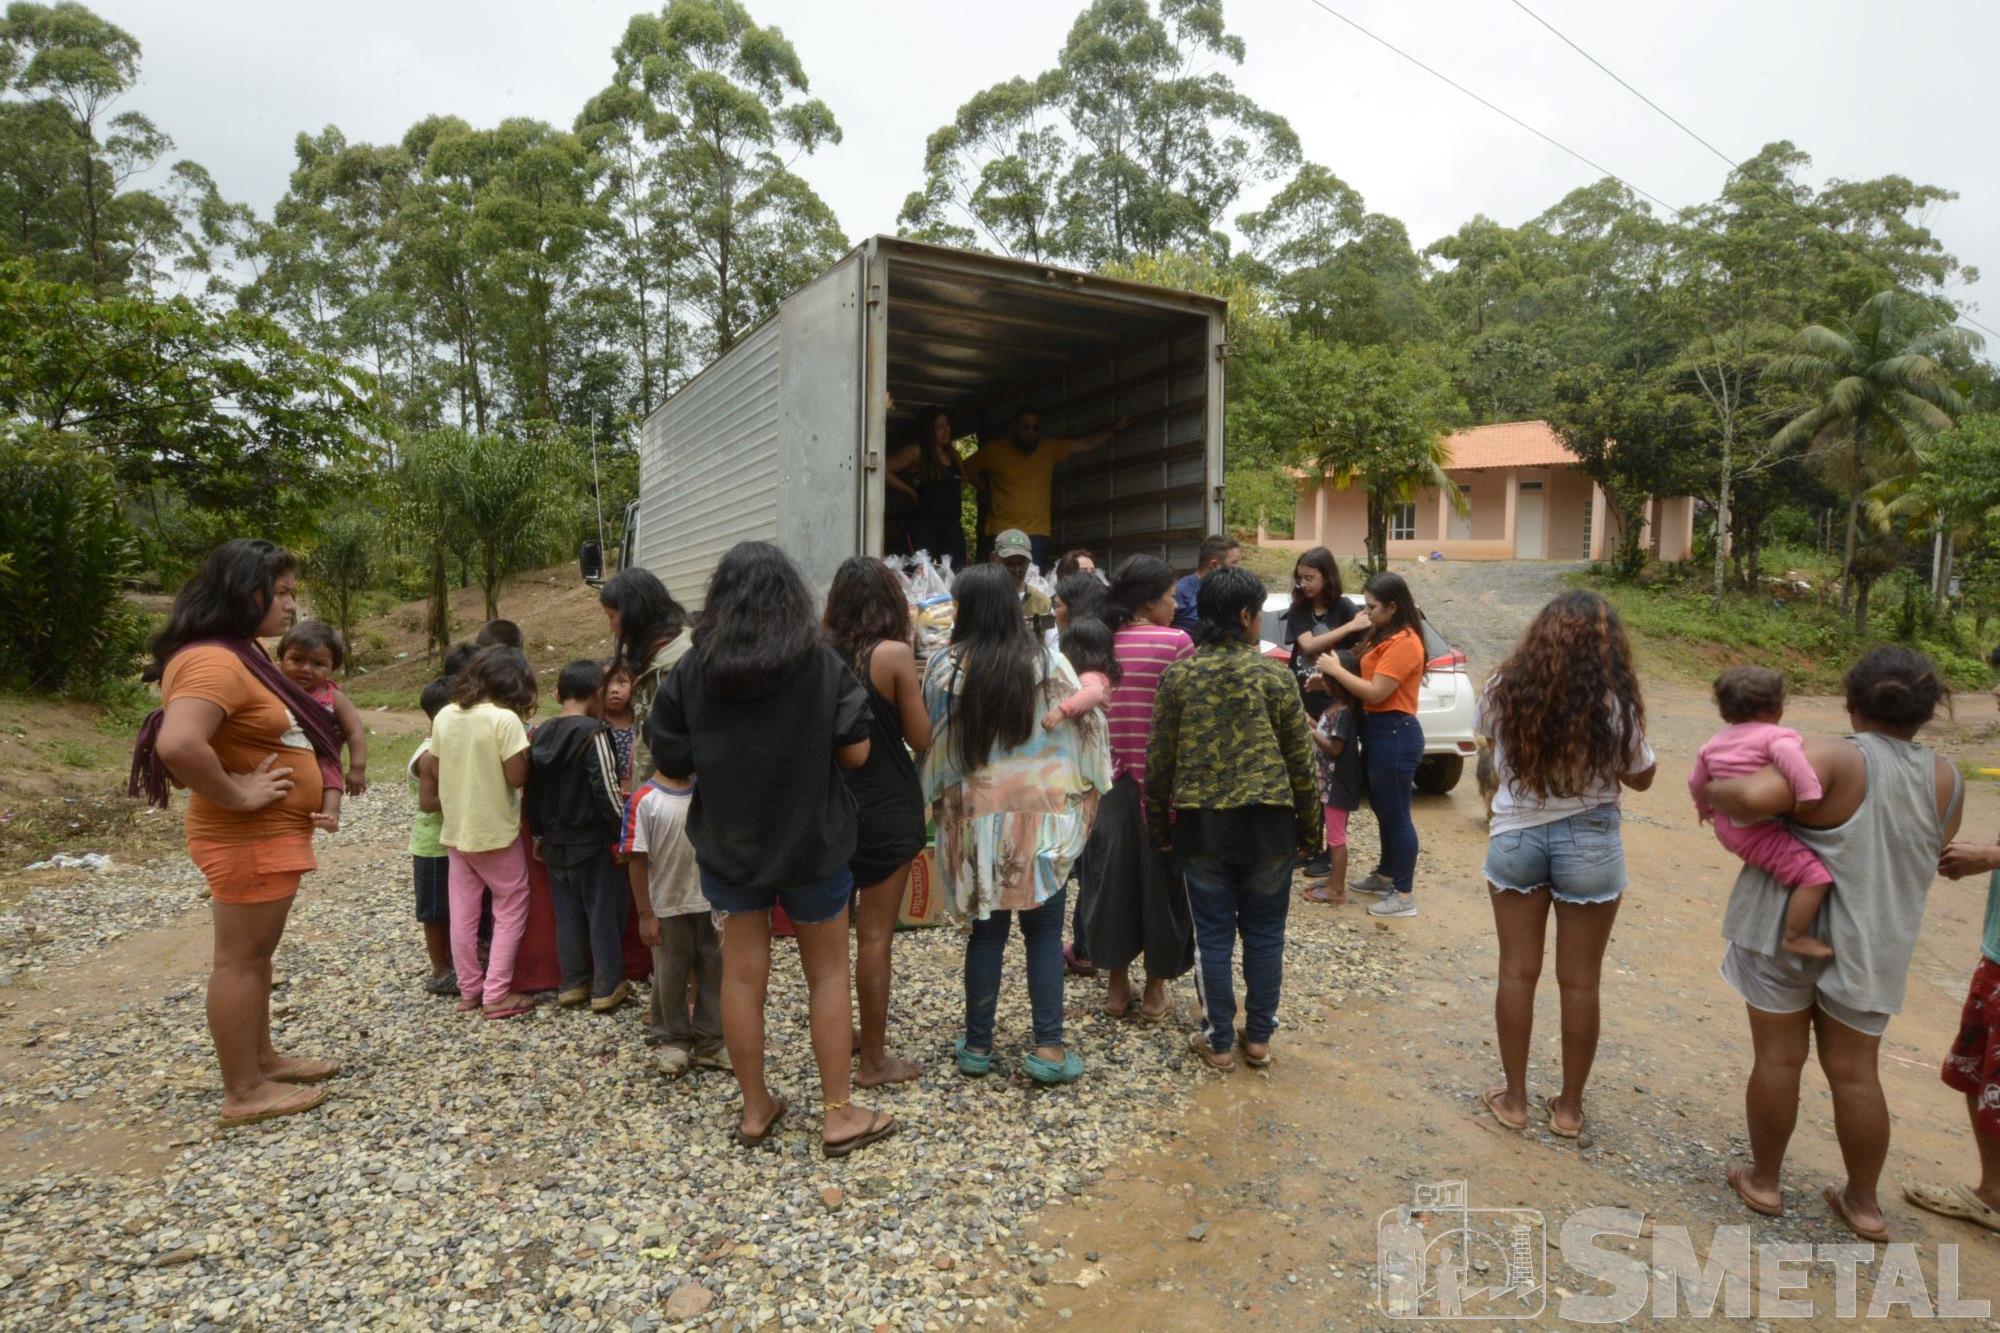 Foguinho/Imprensa SMetal, SMetal entrega cestas do Natal sem Fome em reserva indígena de Tapiraí 